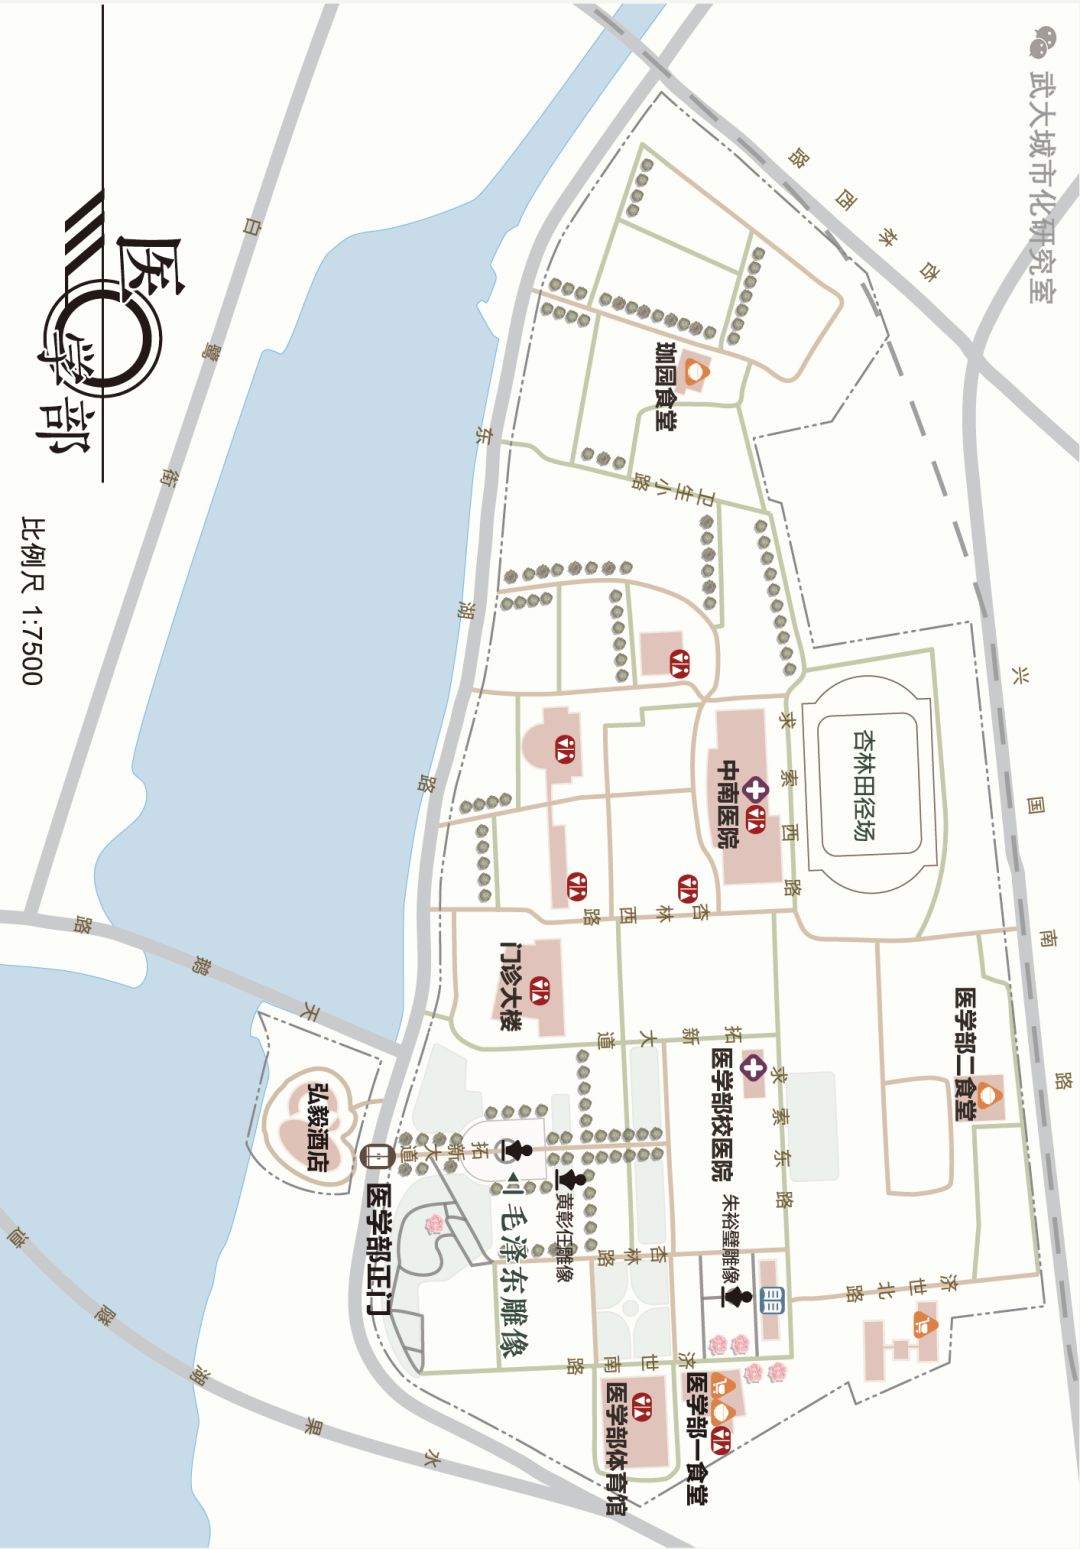 武汉晴川学院地址地图图片